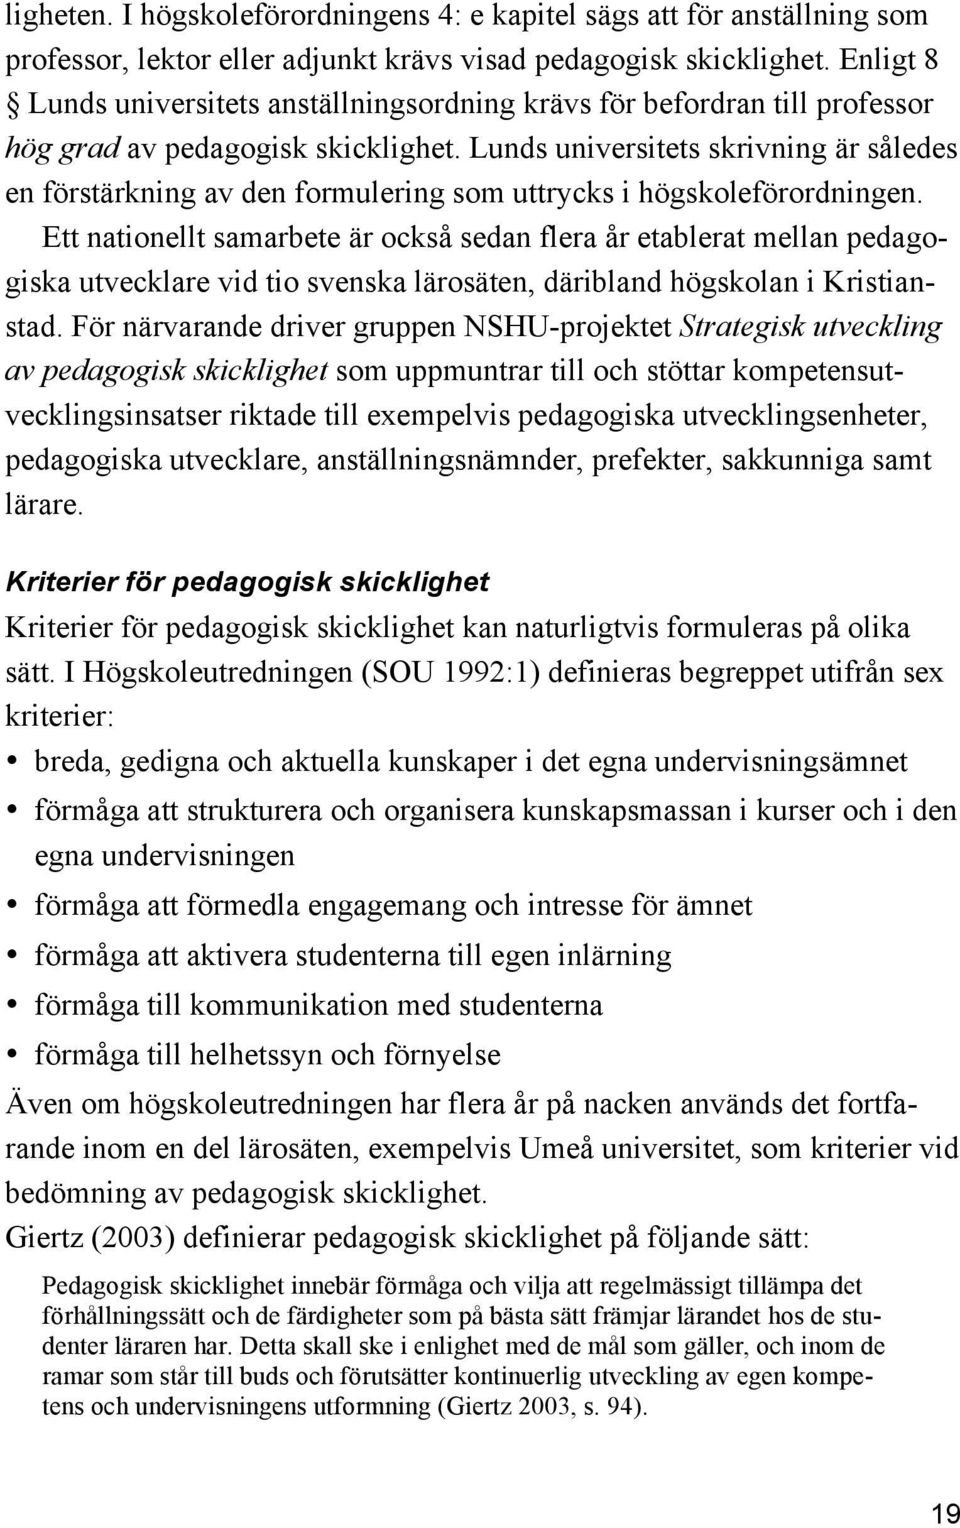 Lunds universitets skrivning är således en förstärkning av den formulering som uttrycks i högskoleförordningen.